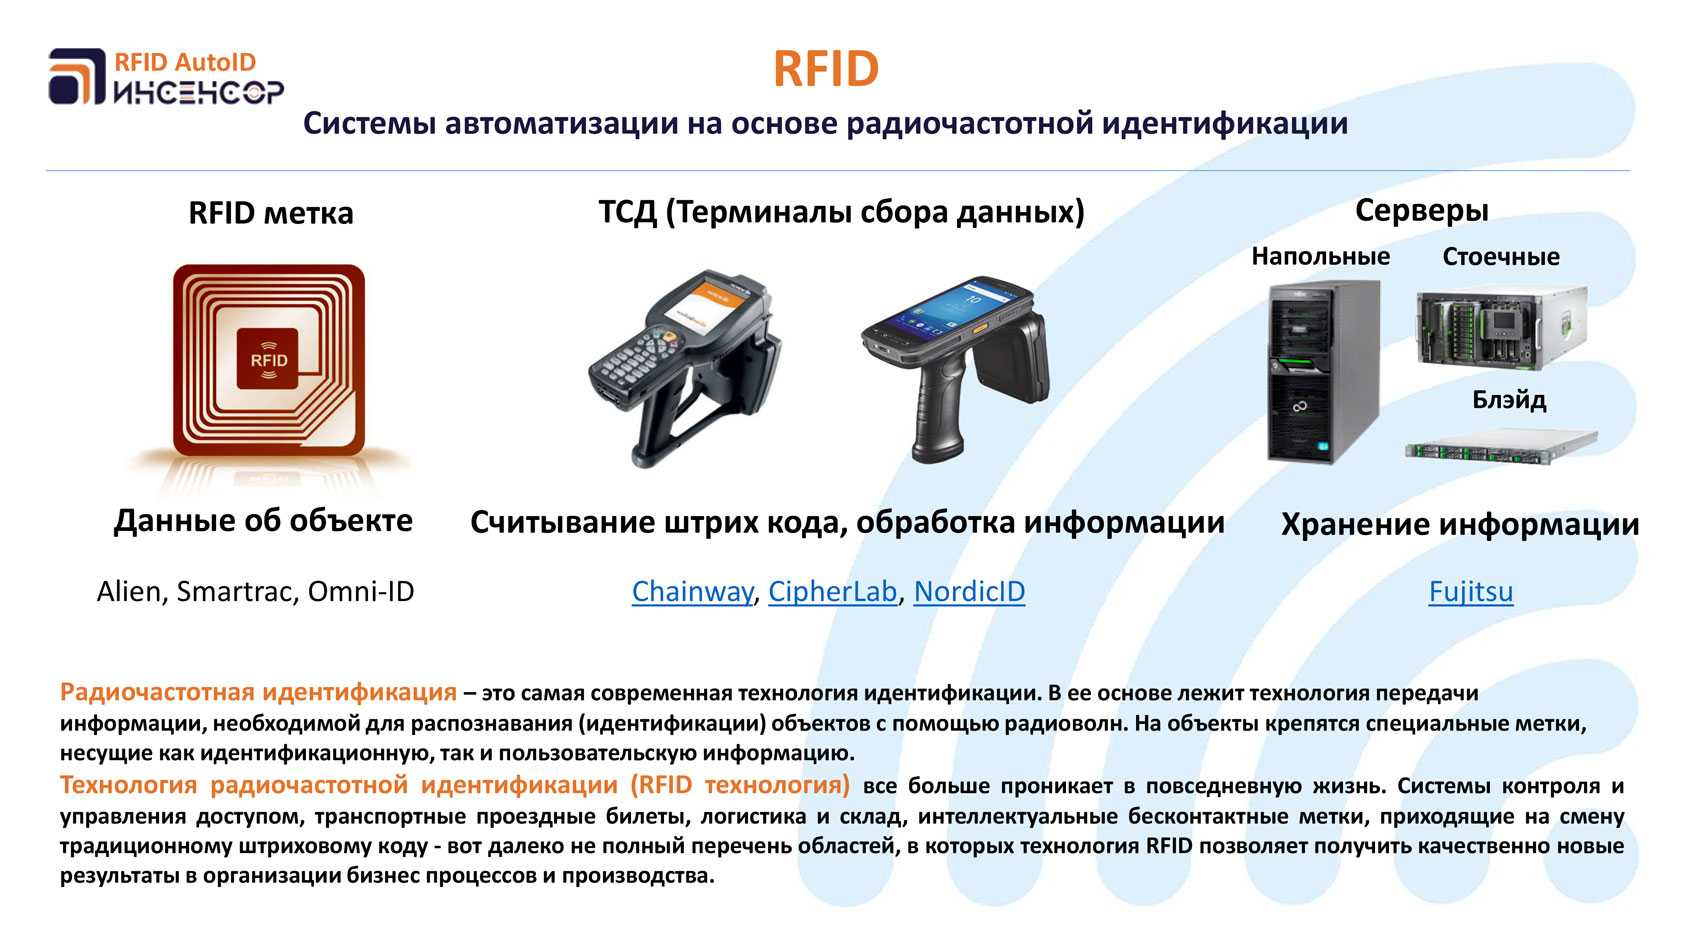 Технология меток. Технология радиочастотной идентификации RFID. Система считывания RFID меток. Radio Frequency identification — радиочастотная идентификация). Как работает RFID считыватель.